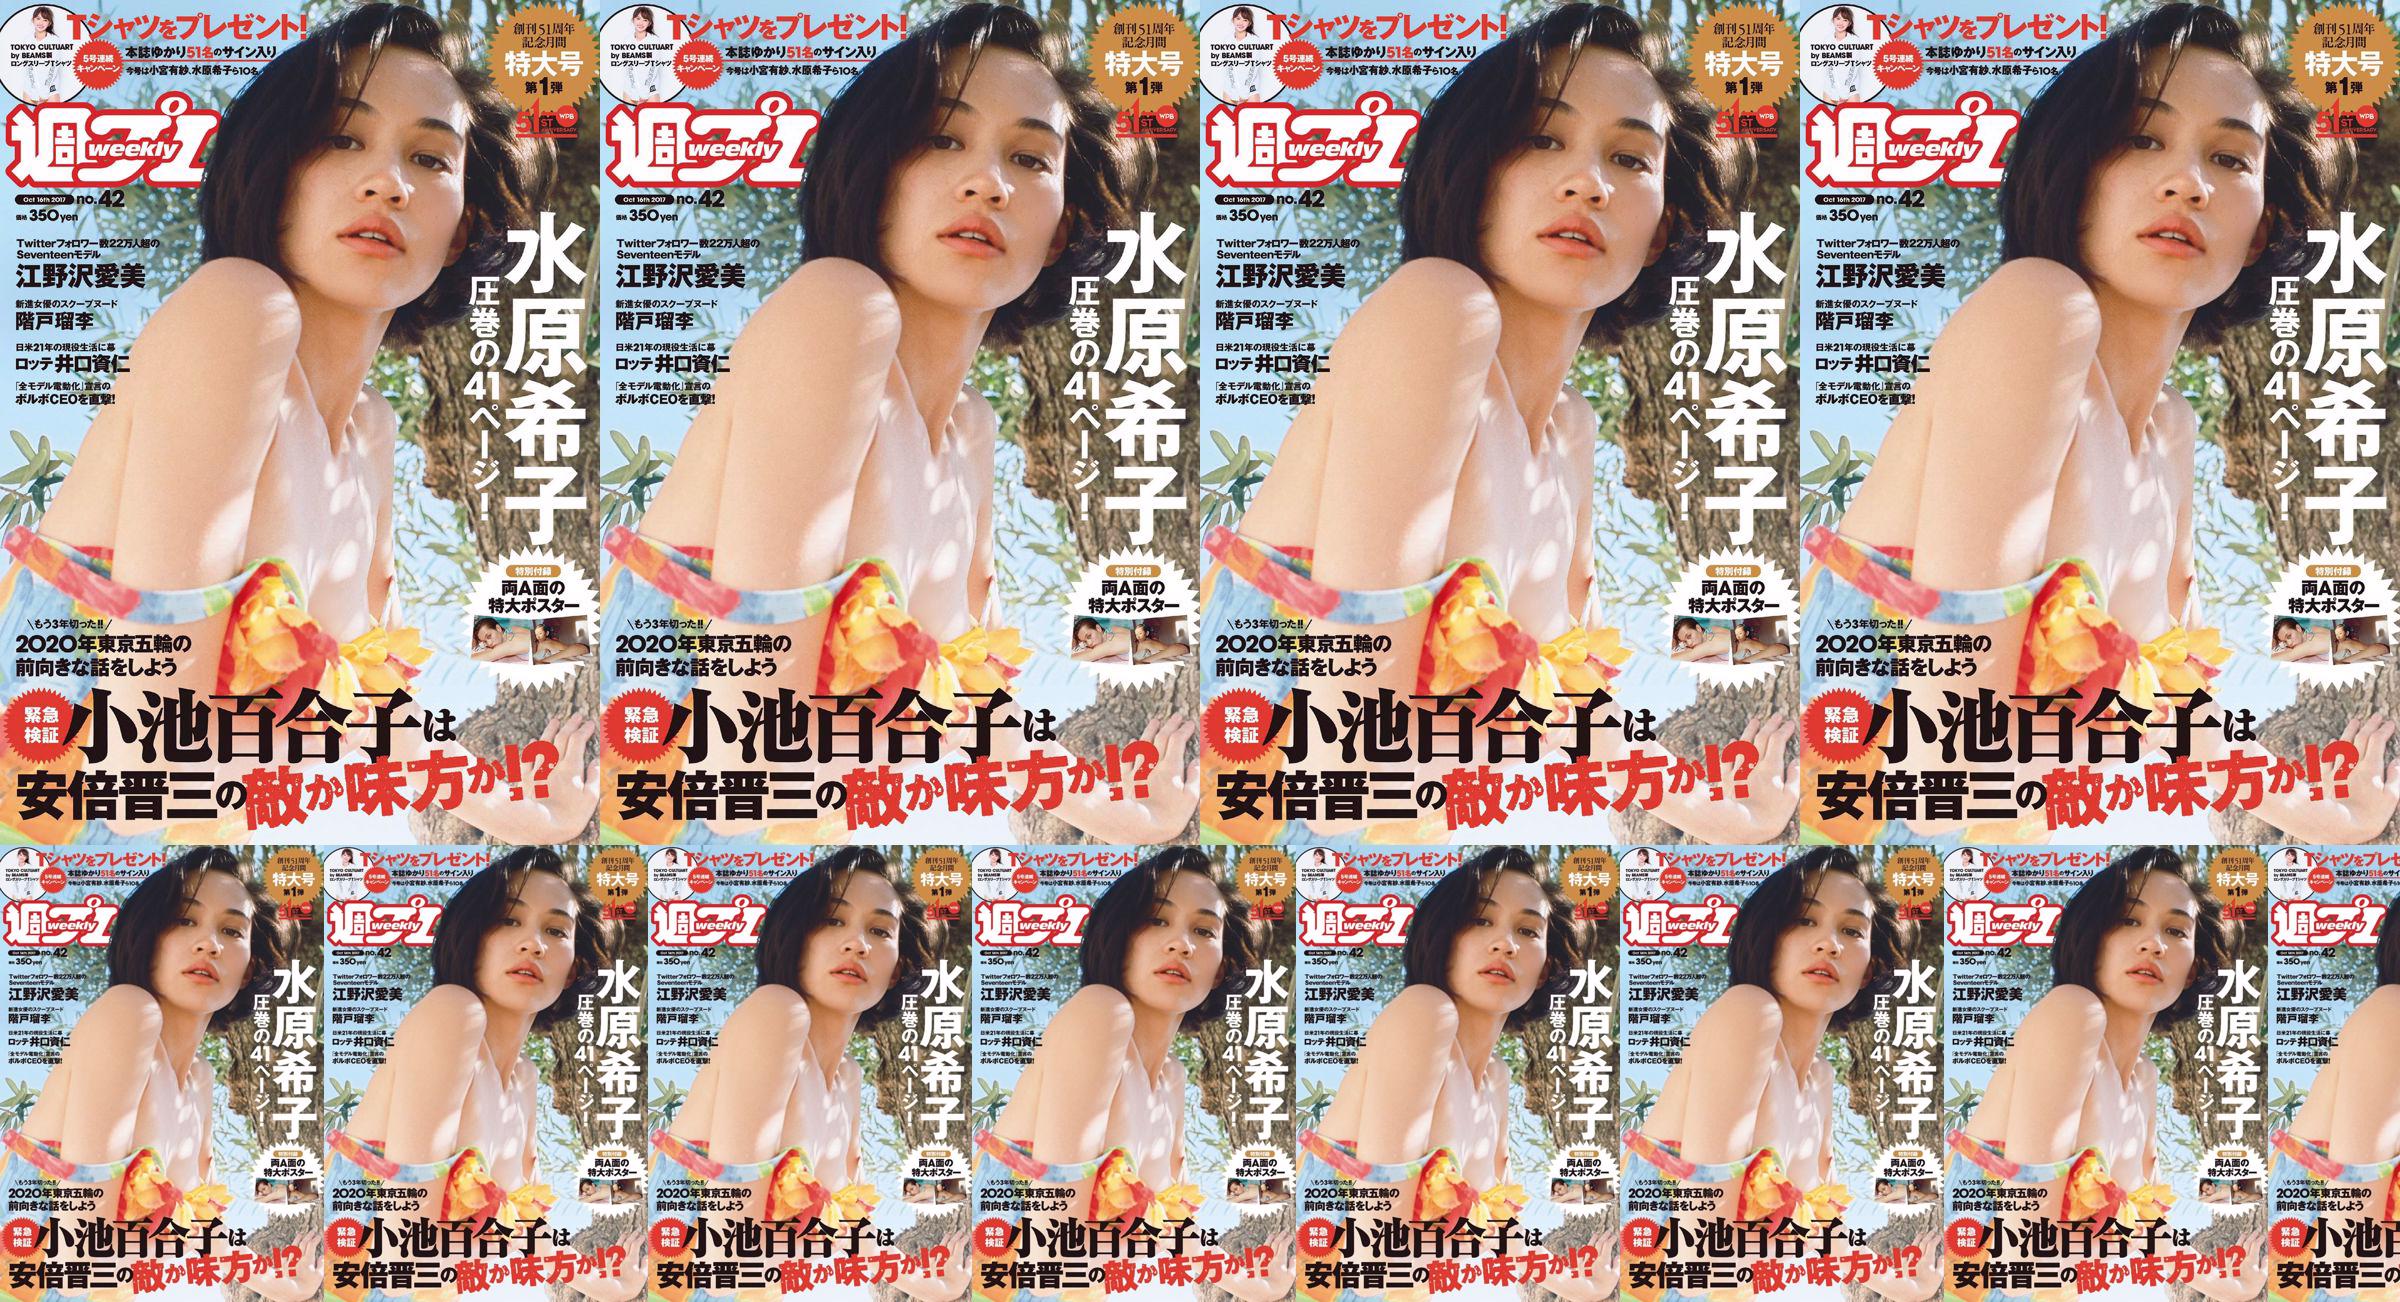 Kiko Mizuhara Manami Enosawa Serina Fukui Miu Nakamura Ruri Shinato [Weekly Playboy] 2017 No.42 Photo Magazine No.47122f Page 6